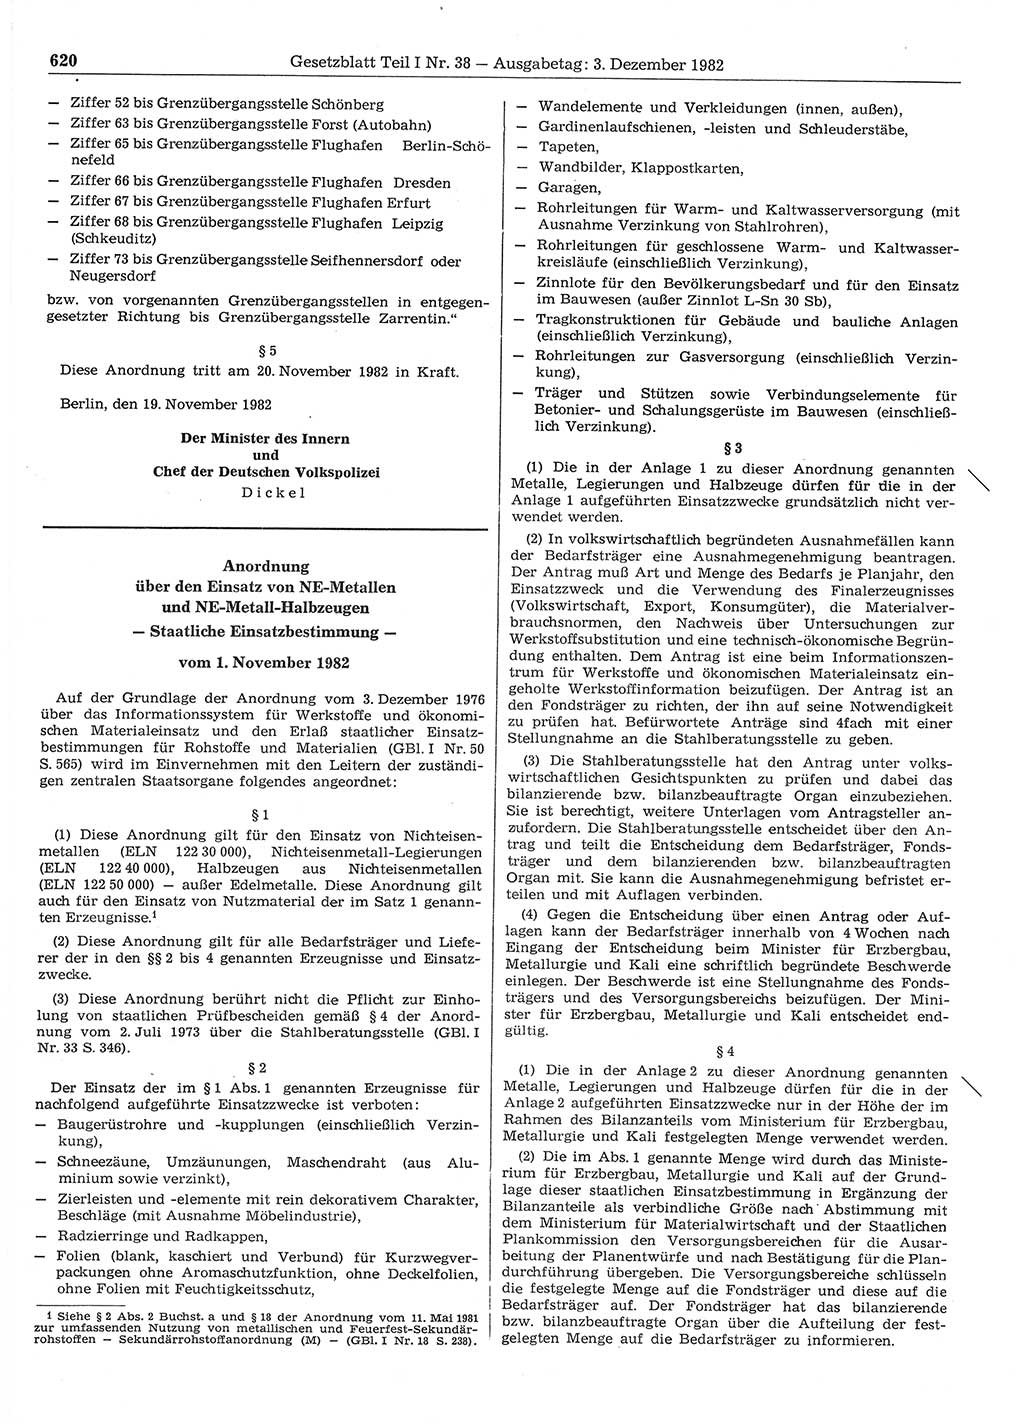 Gesetzblatt (GBl.) der Deutschen Demokratischen Republik (DDR) Teil Ⅰ 1982, Seite 620 (GBl. DDR Ⅰ 1982, S. 620)